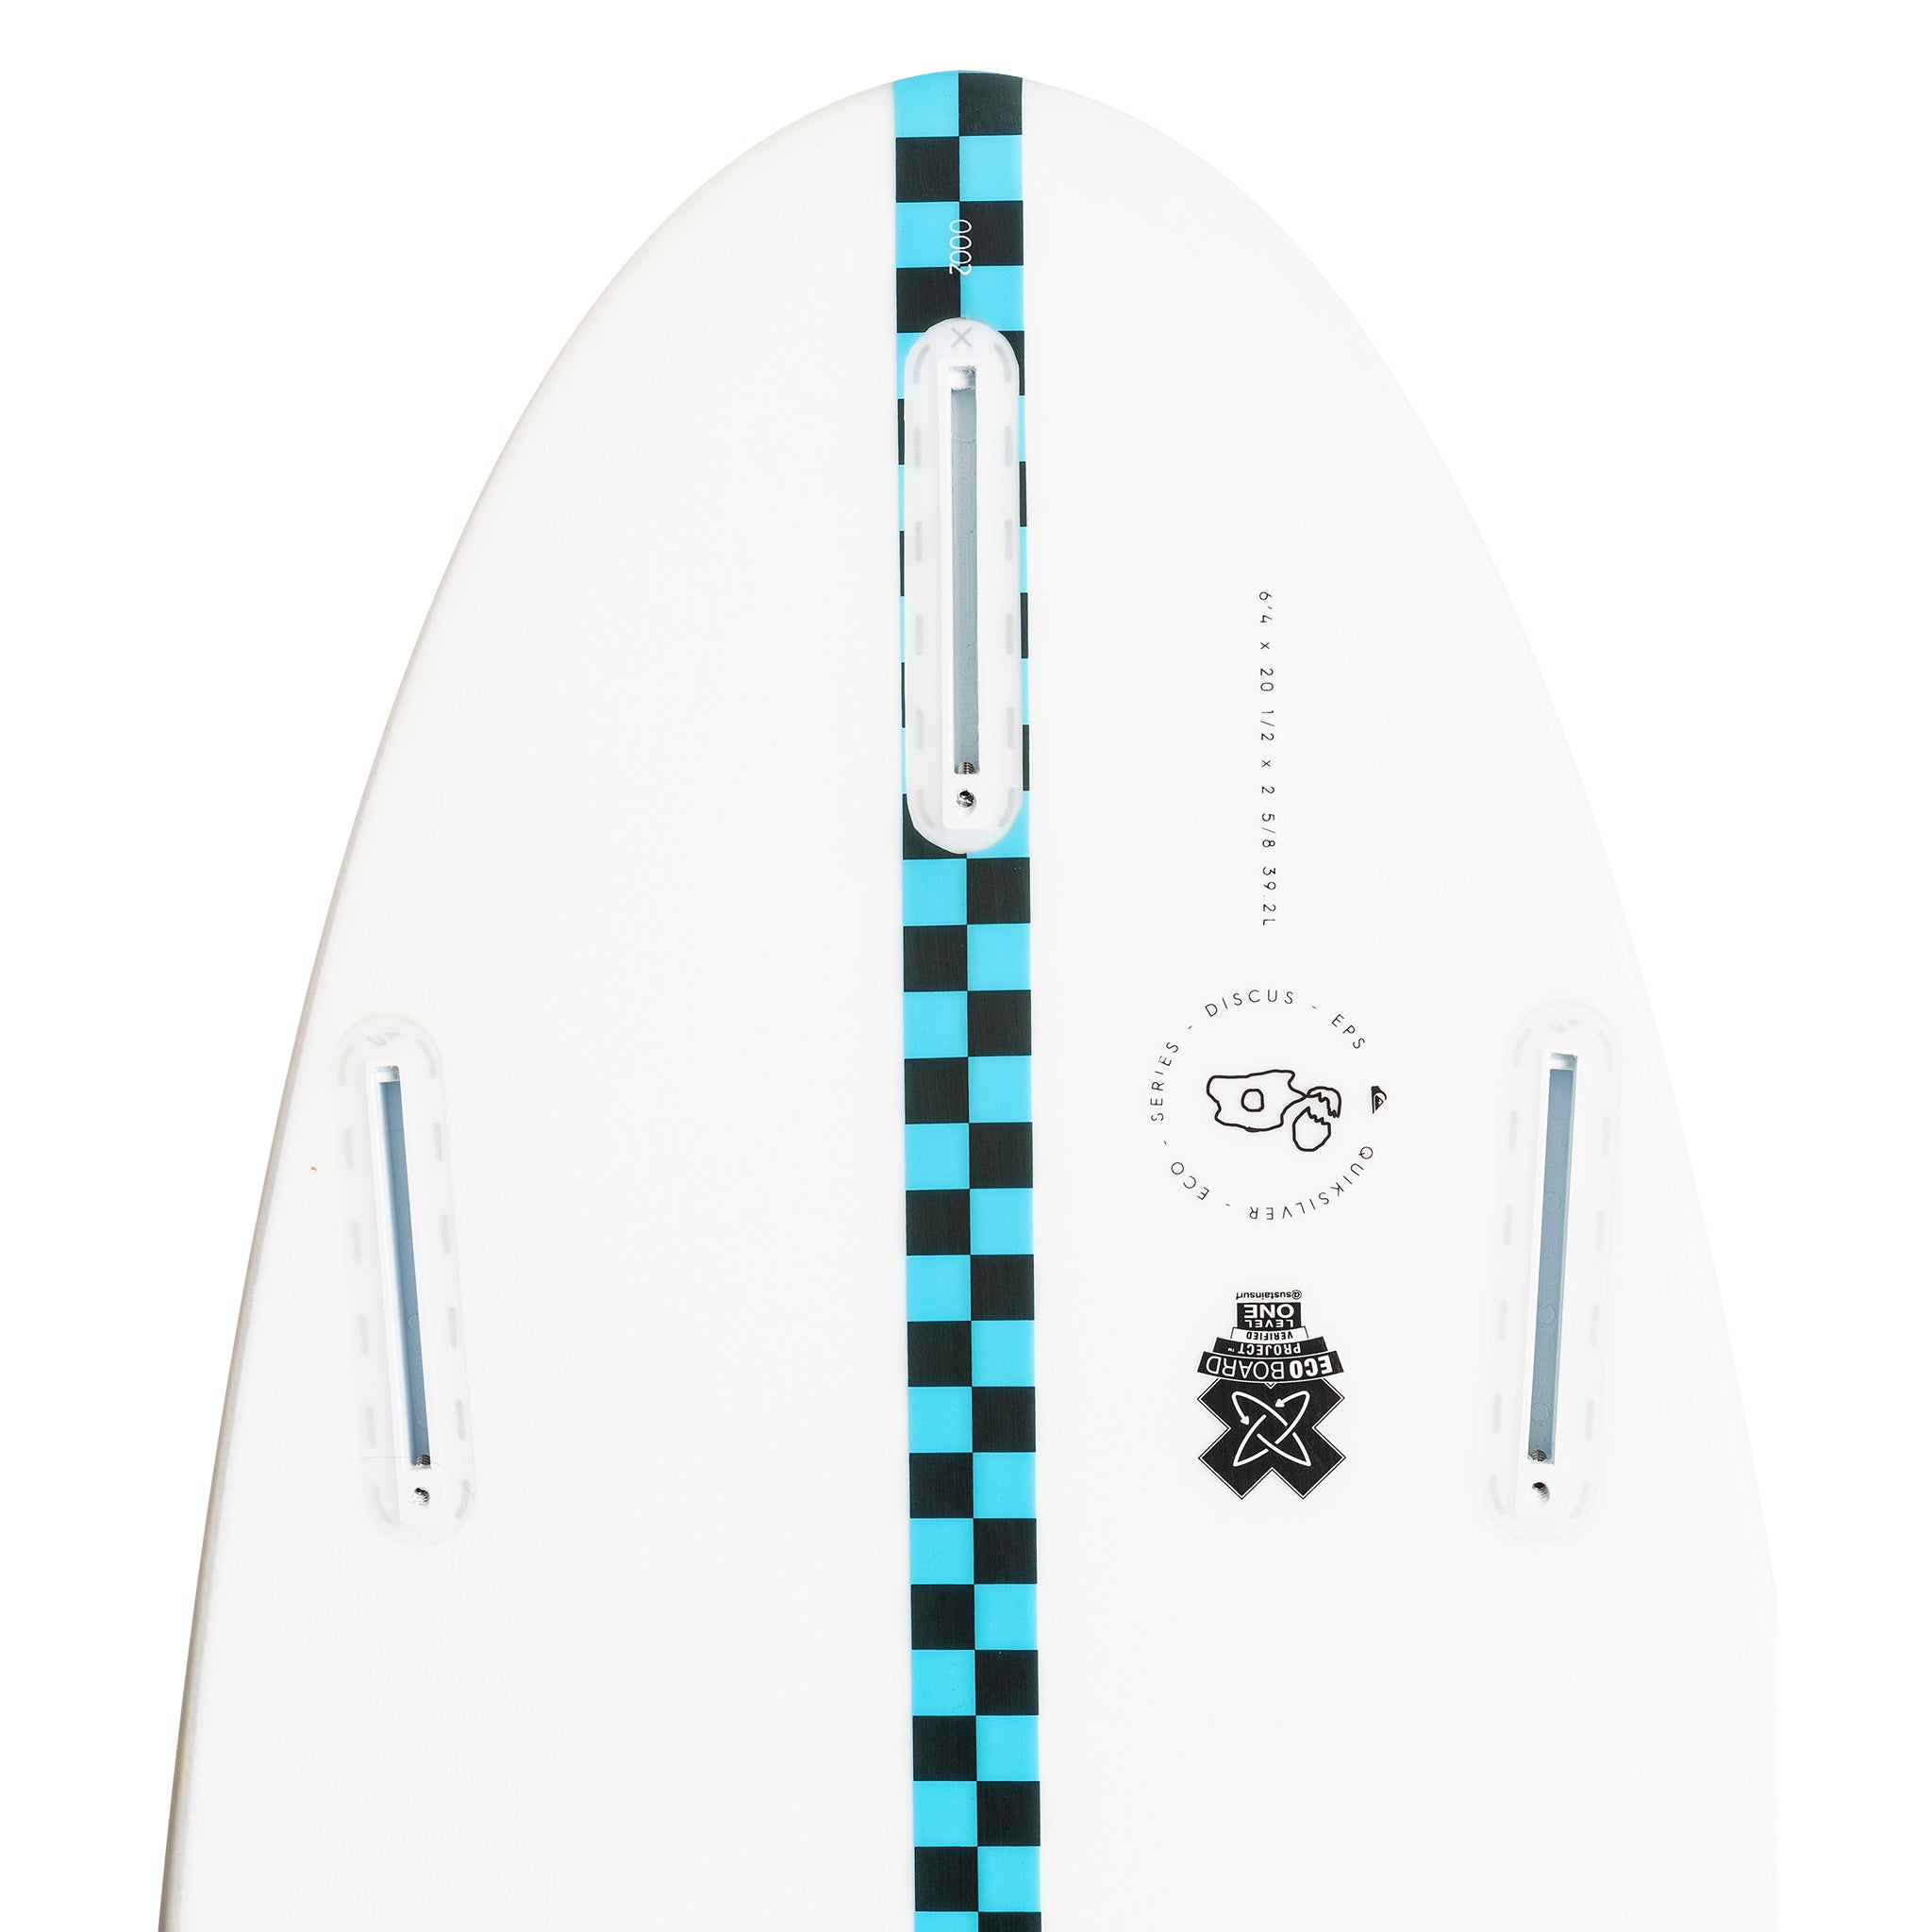 Quiksilver Surfboard Discus